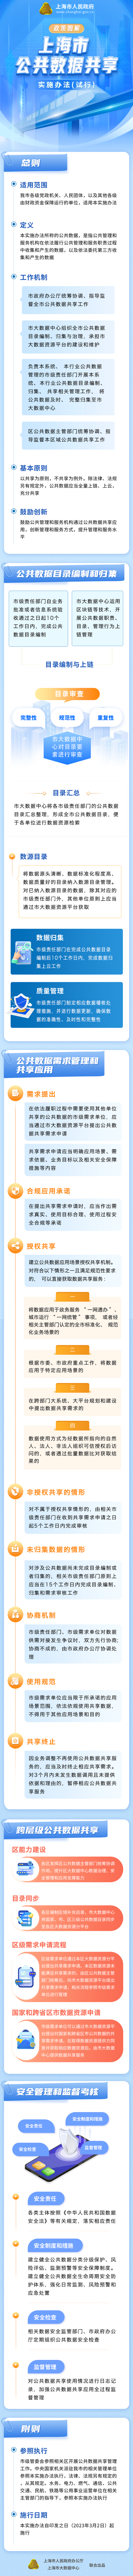 《上海市公共数据共享实施办法（试行）》政策图解.png